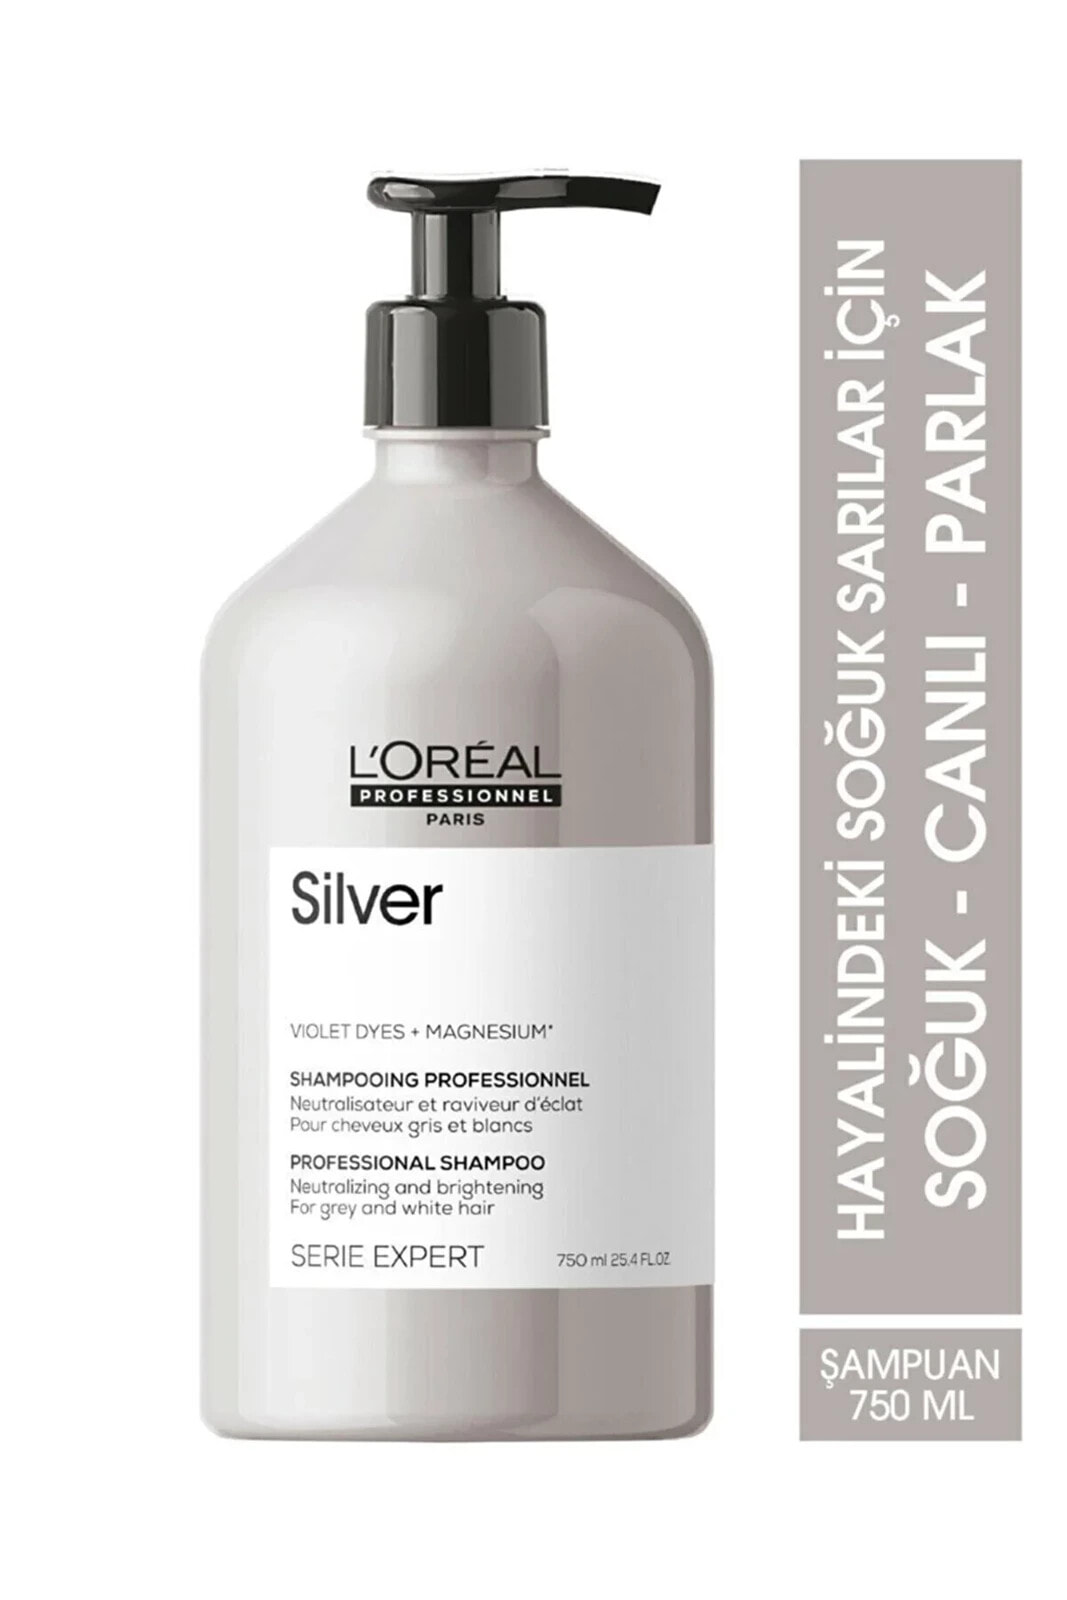 L'Oreal Professionnel Silver Shampoo Оттеночный шампунь для нейтрализации желтизны осветленных и седых волос 1500 мл